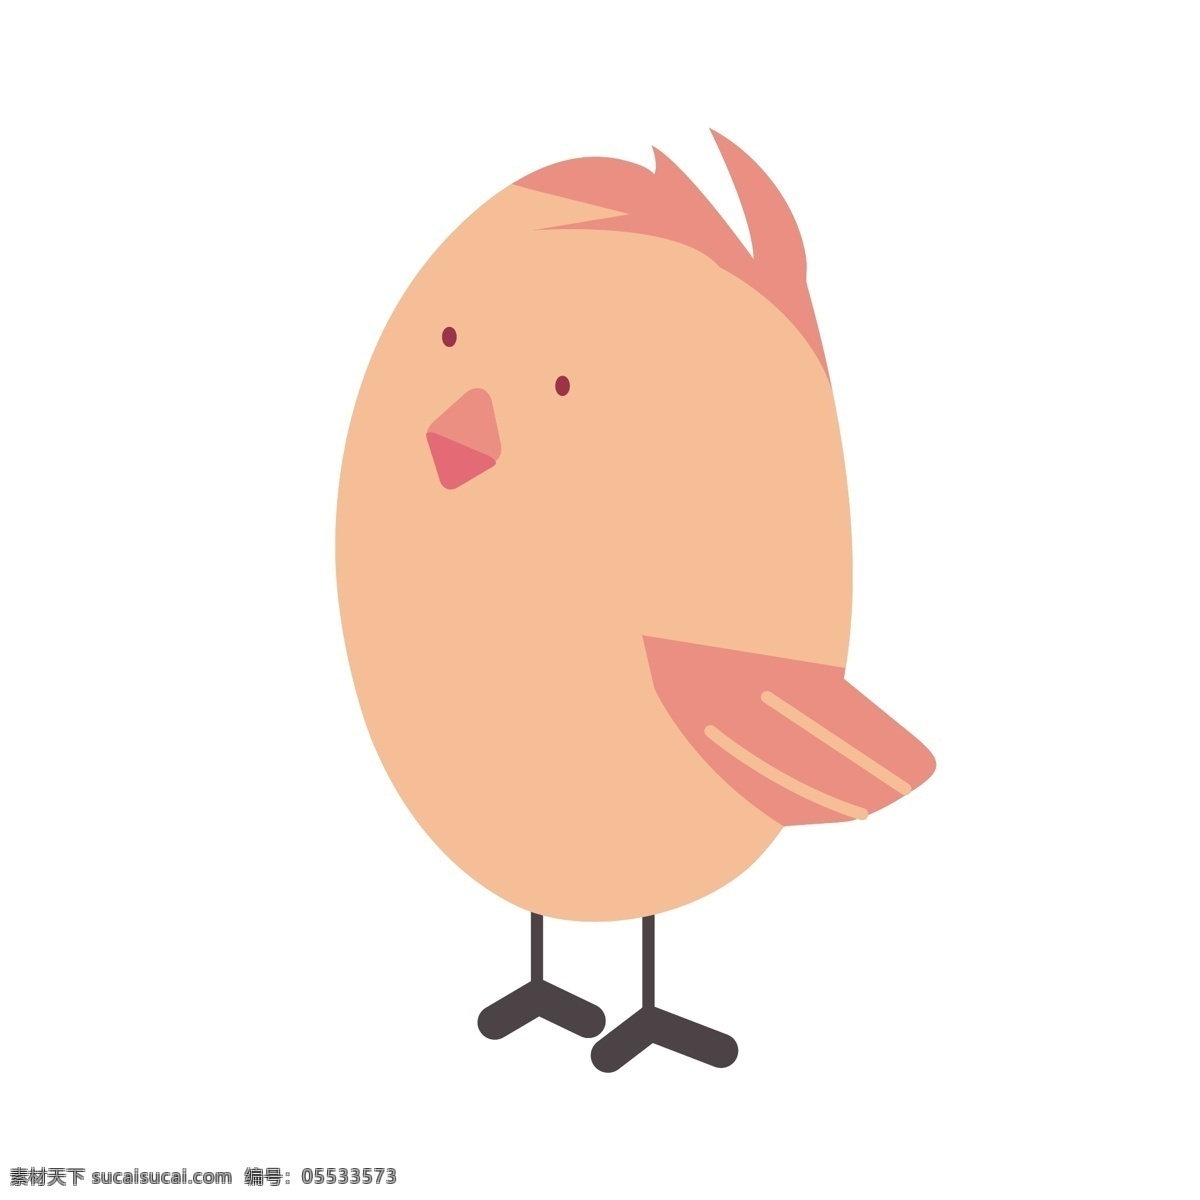 卡通 粉色 小鸟 矢量 小鸟卡通 卡通小鸟 粉色的小鸟 可爱 可爱的小鸟 萌萌的 萌萌的小鸟